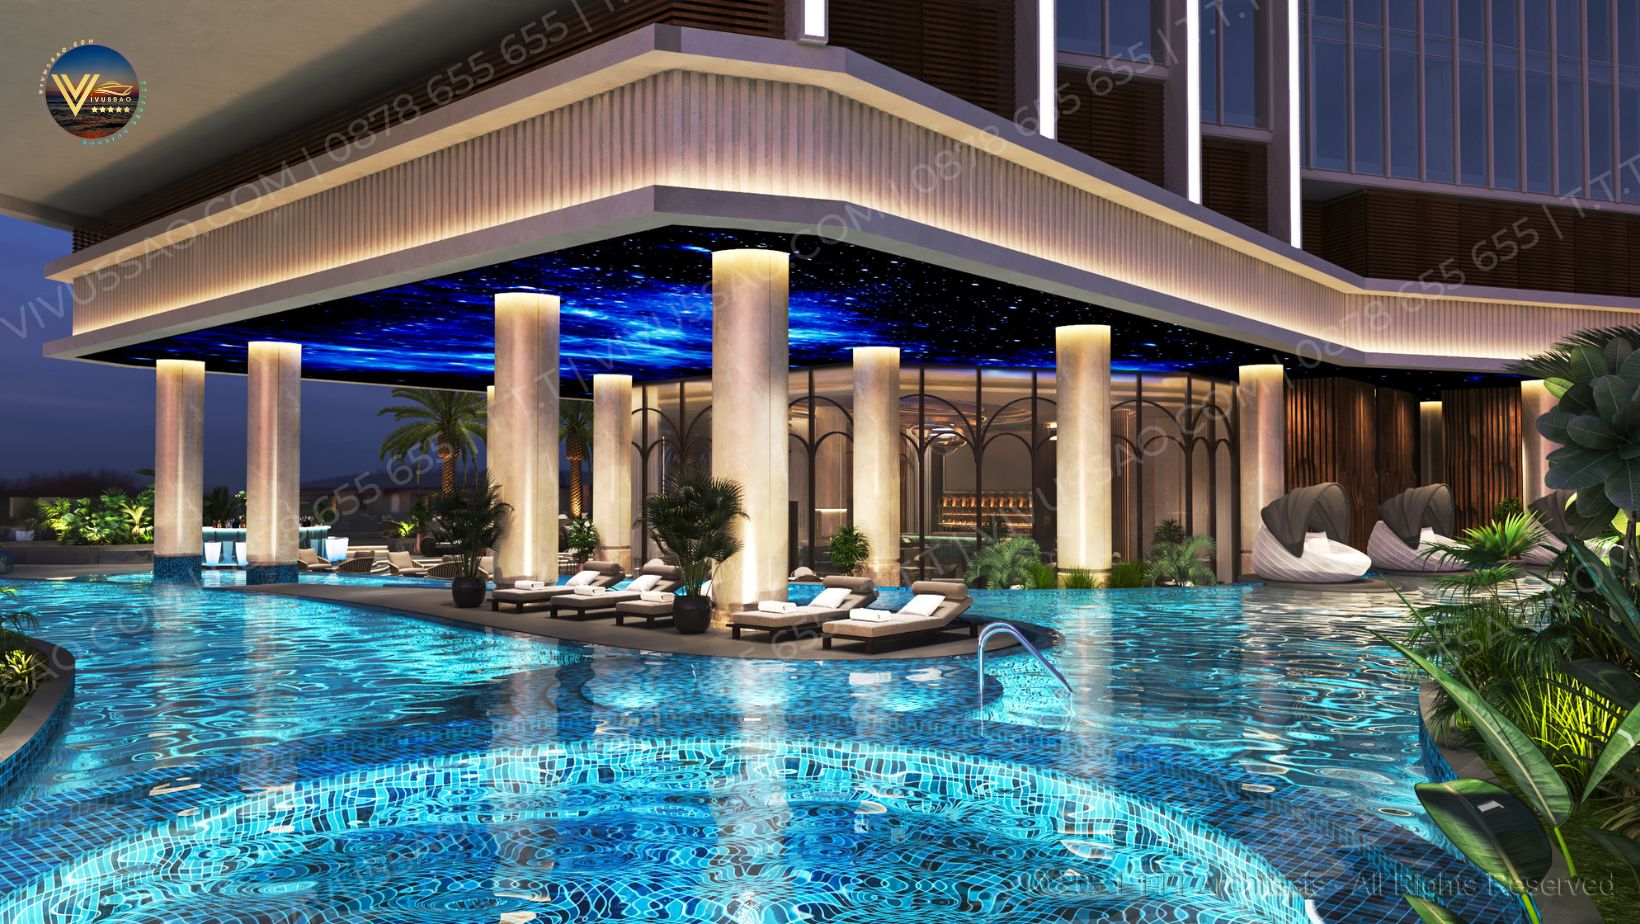 Cập Nhật Bảng Giá Phòng Tại Khách Sạn Sea Stars Hotel Hạ Long 2023 | Khách sạn Sea Star Hotel Hạ Long - Tinh hoa lưu trú bên bờ Di sản.